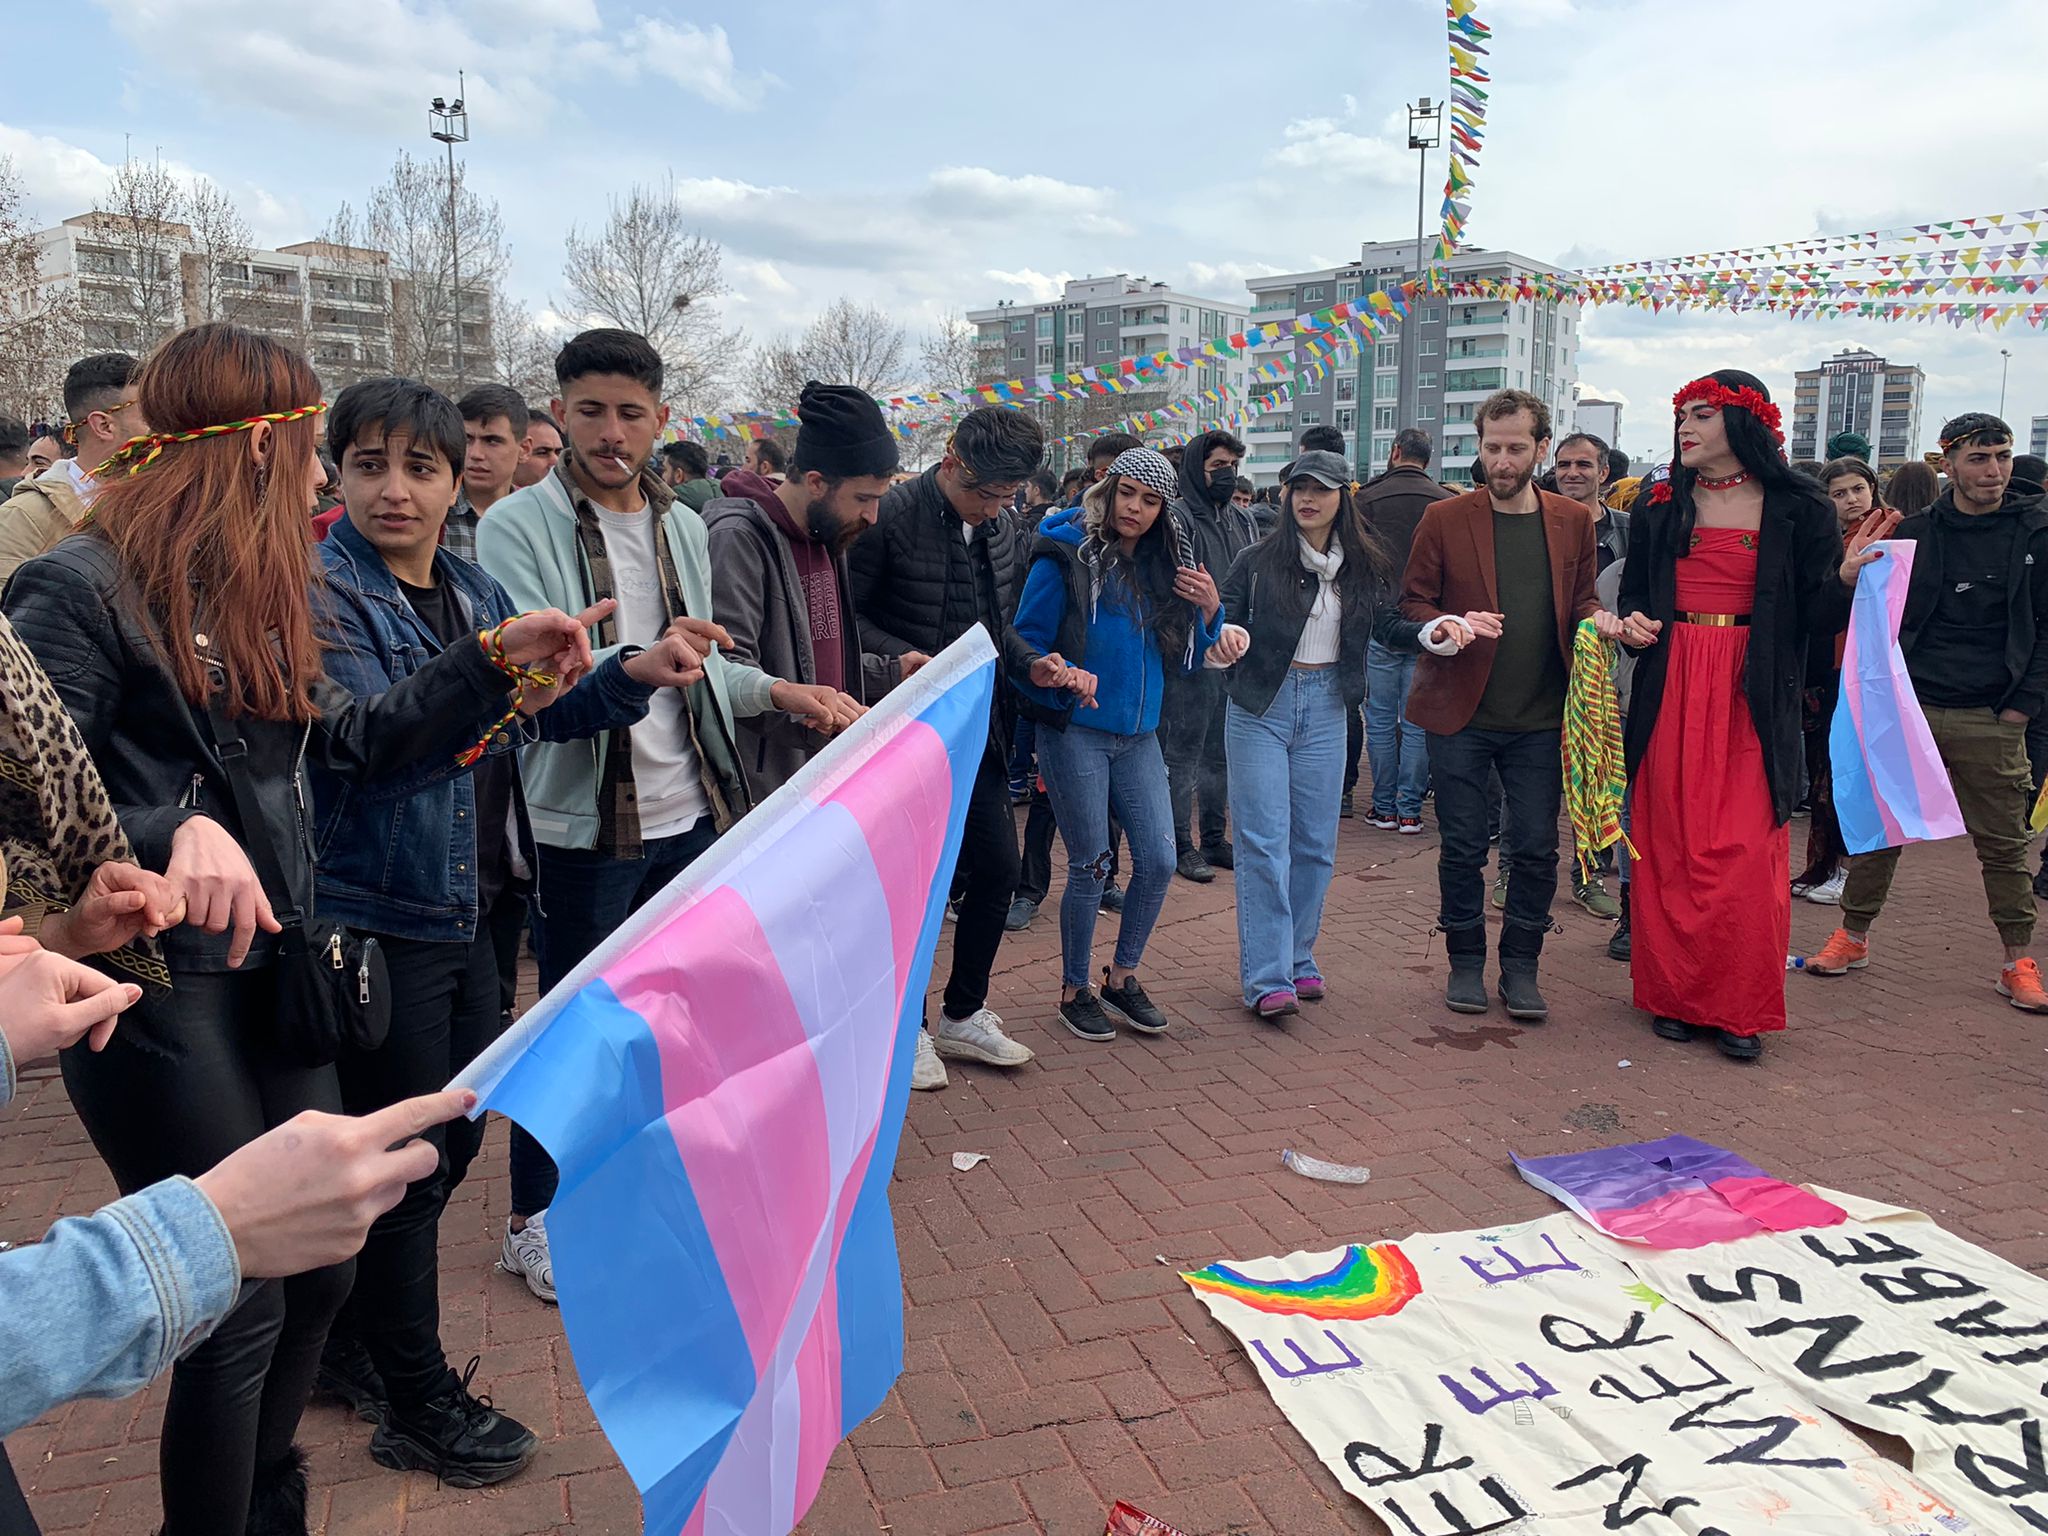 Diyarbakır, İstanbul ve İzmir Newrozlarında LGBTİ+’ların onuruna saldırılar | Kaos GL - LGBTİ+ Haber Portalı